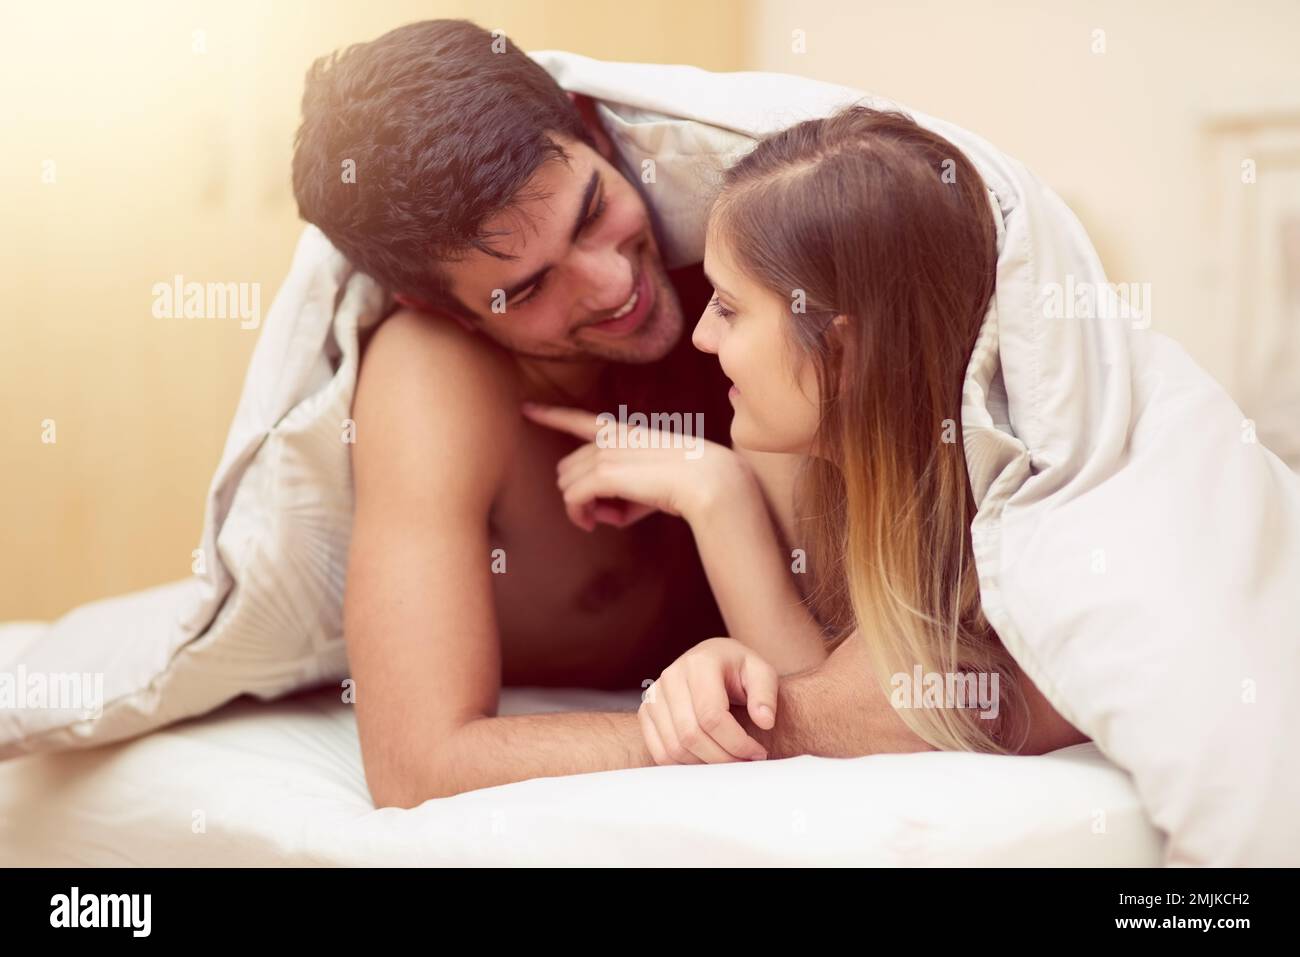 Laisser ses empreintes digitales sur son coeur. un jeune couple aimant se souriant les uns les autres tout en étant allongé sous une couverture ensemble. Banque D'Images